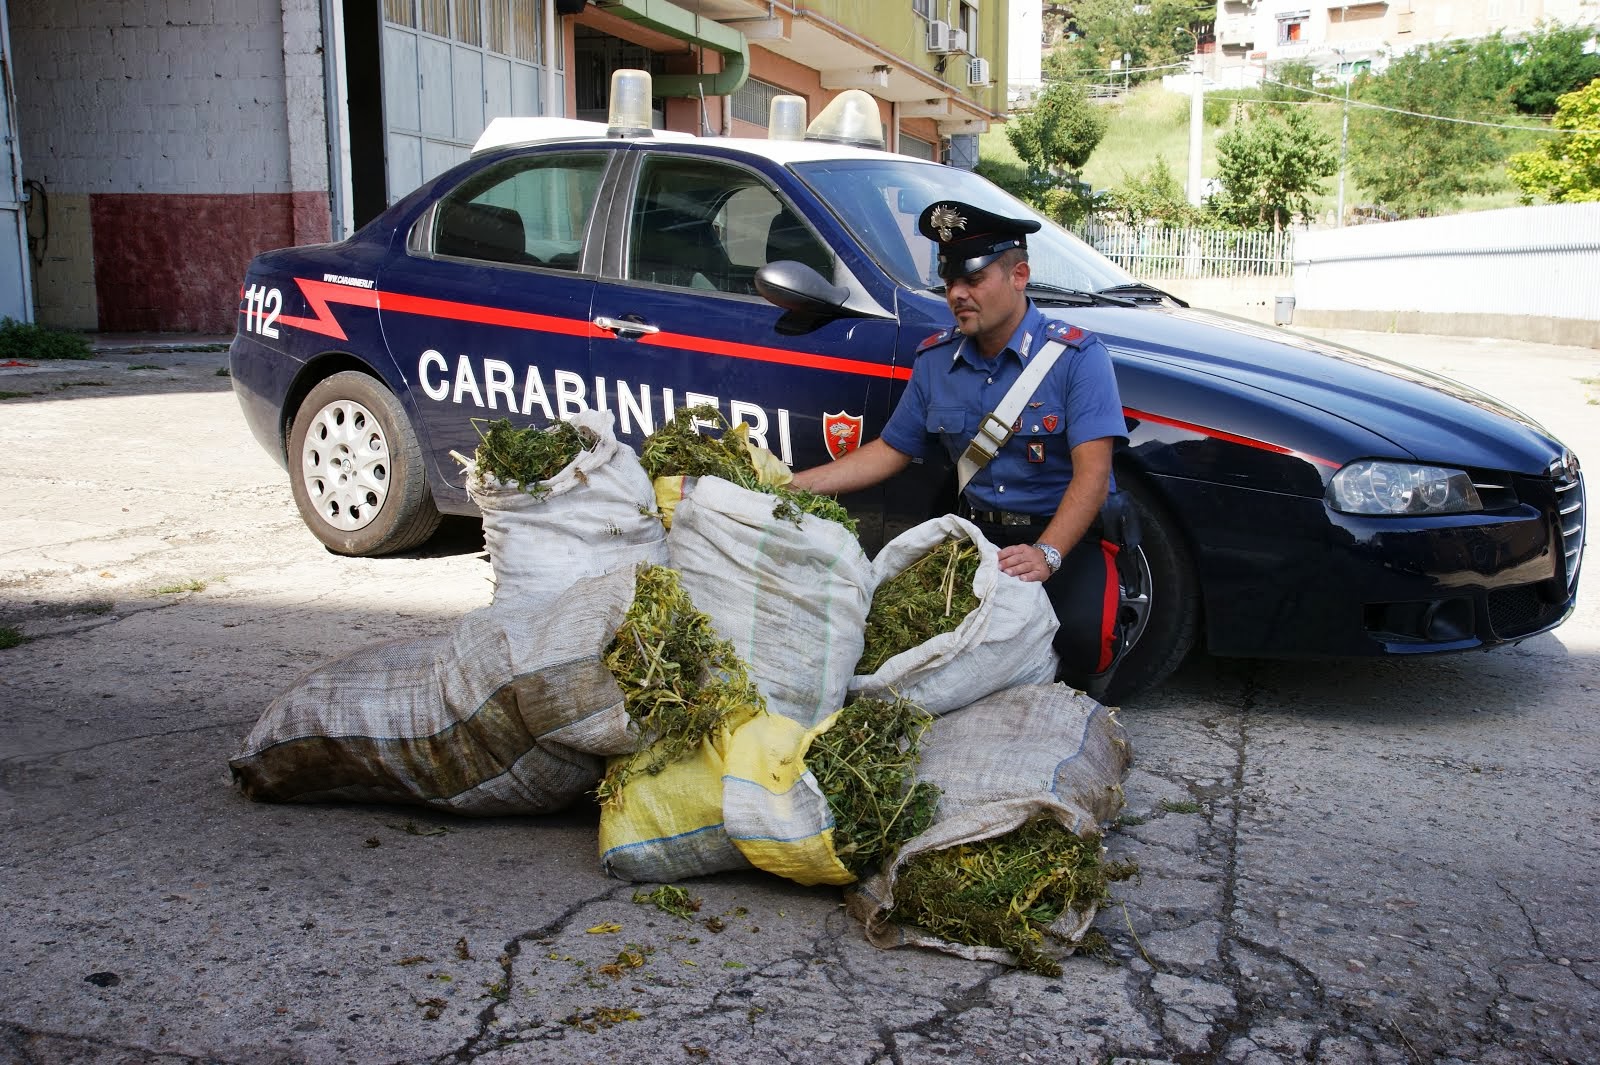  Piante di cannabis in un ex campo di calcetto: carabinieri arrestano 2 coltivatori